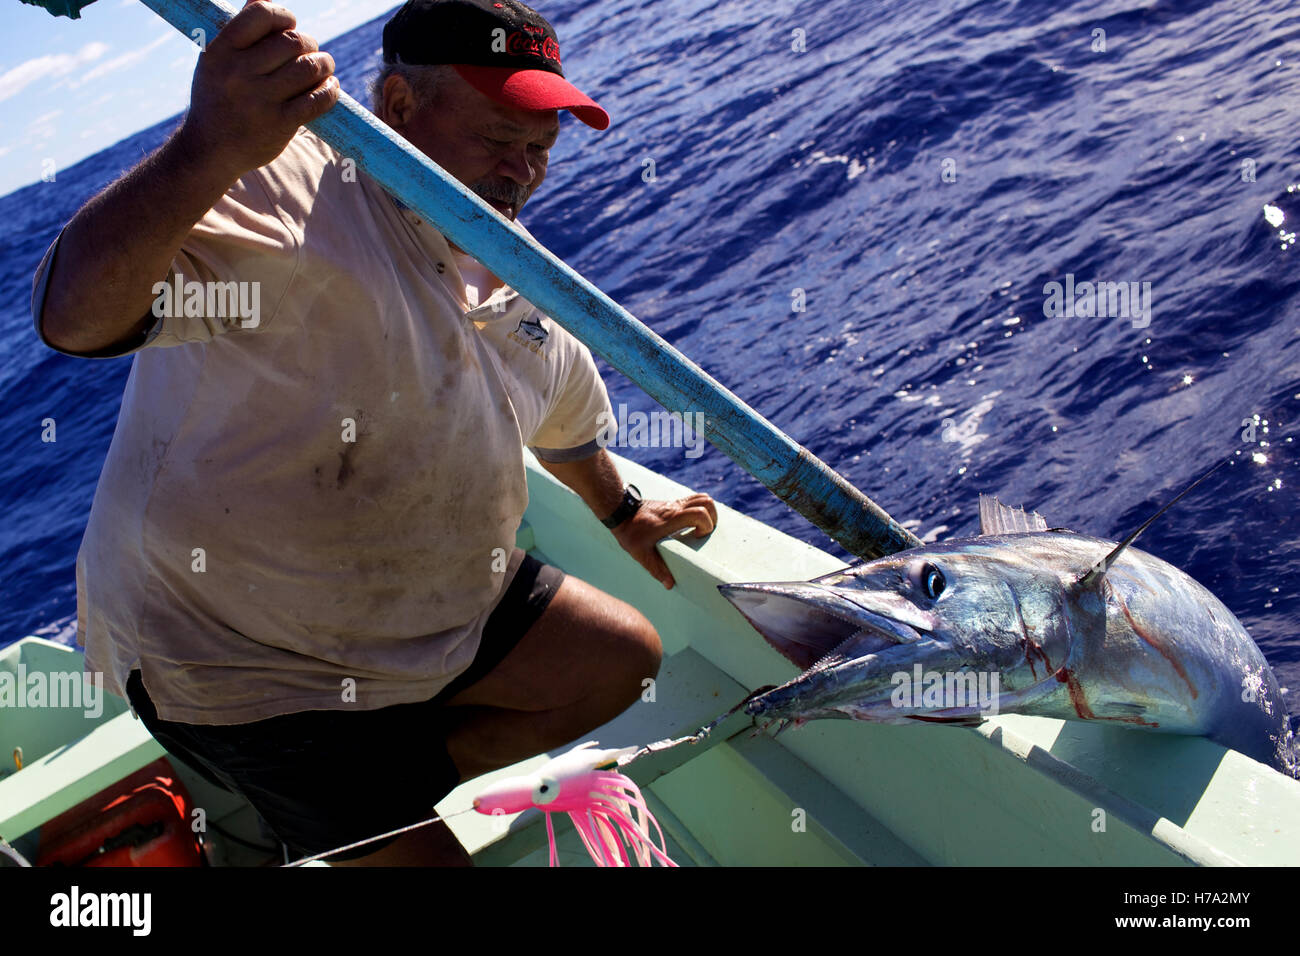 Pitcairn, Söhne von Meuterern! -01/06/2012 - Pitcairn / Pitcairn - Angeln einige Wahoos auf die Landung der Pitcairninseln - Olivier Goujon / Le Pictorium Stockfoto